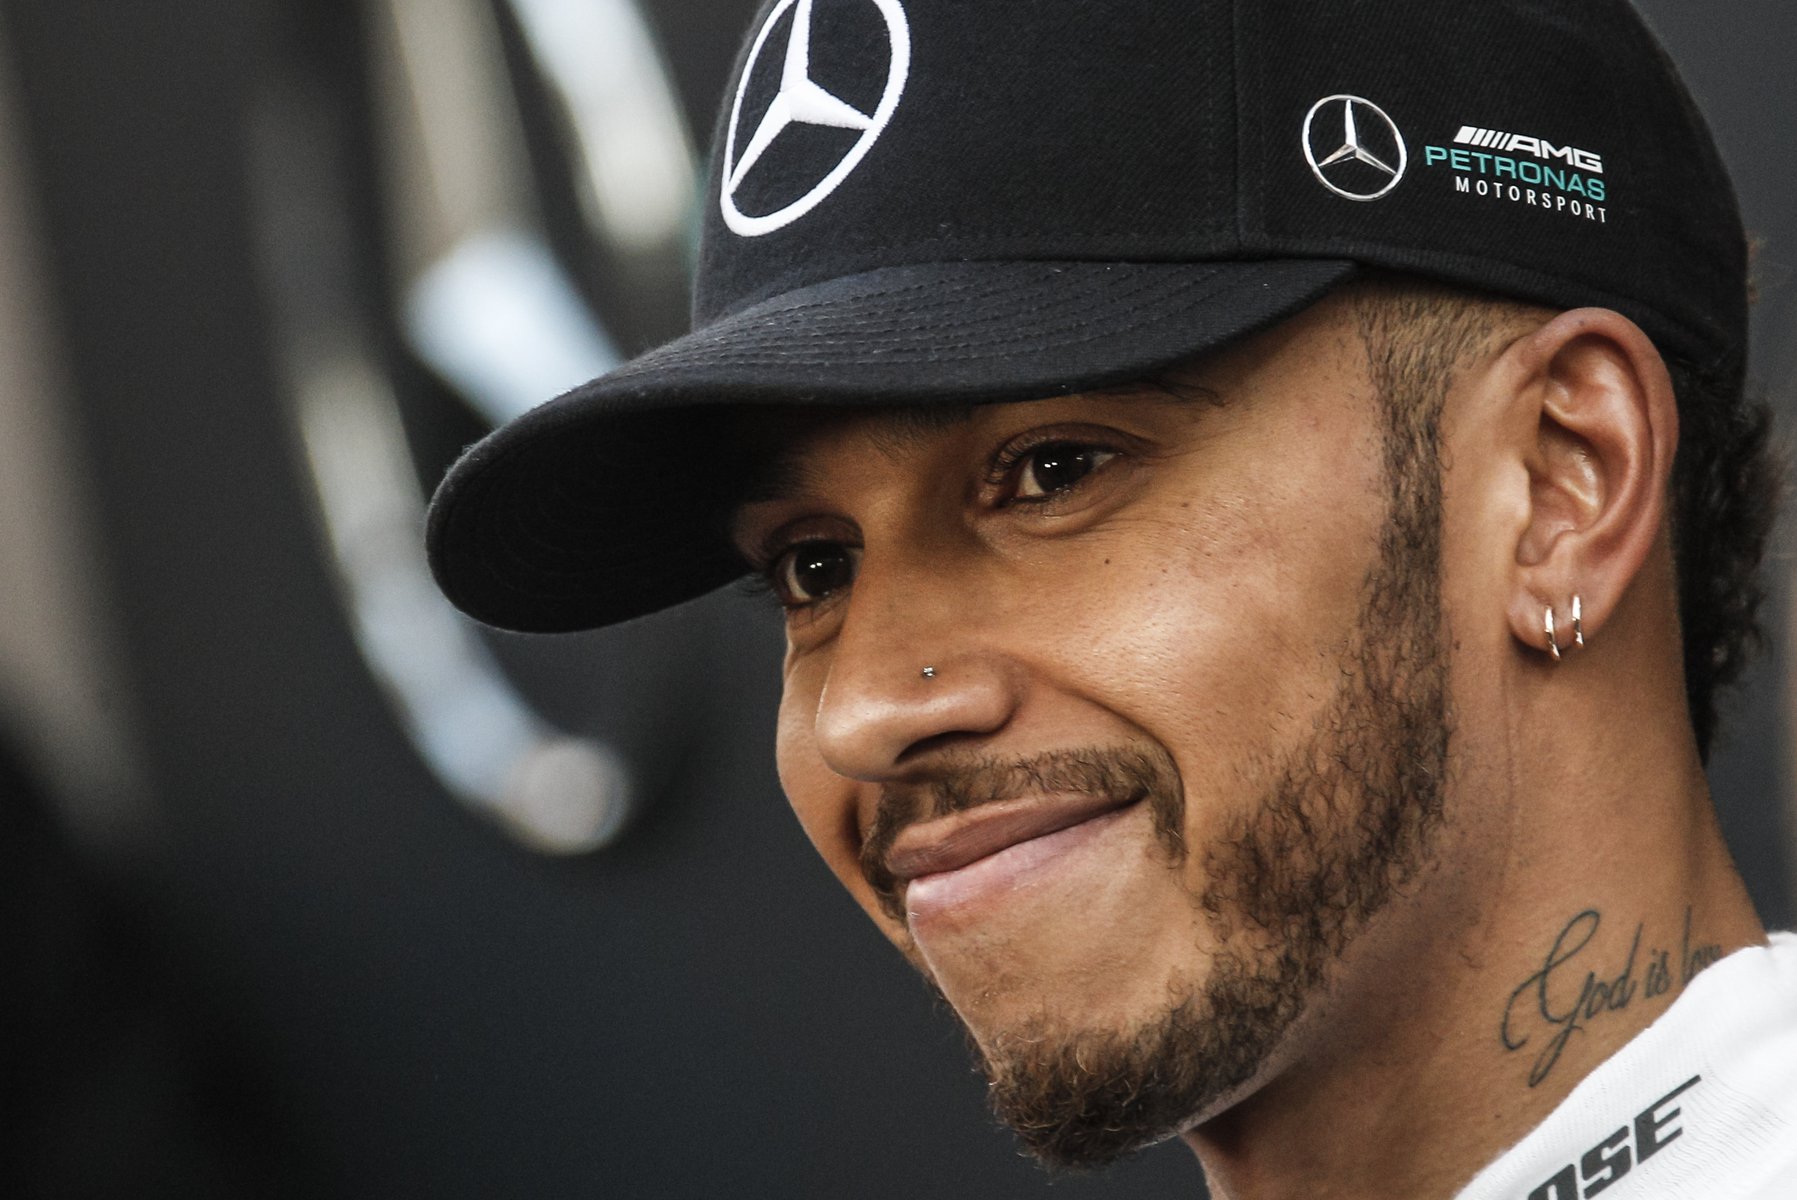 Στον Lewis Hamilton αρέσει να αποδεικνύει στους ανθρώπους πόσο λάθος έκαναν για εκείνον